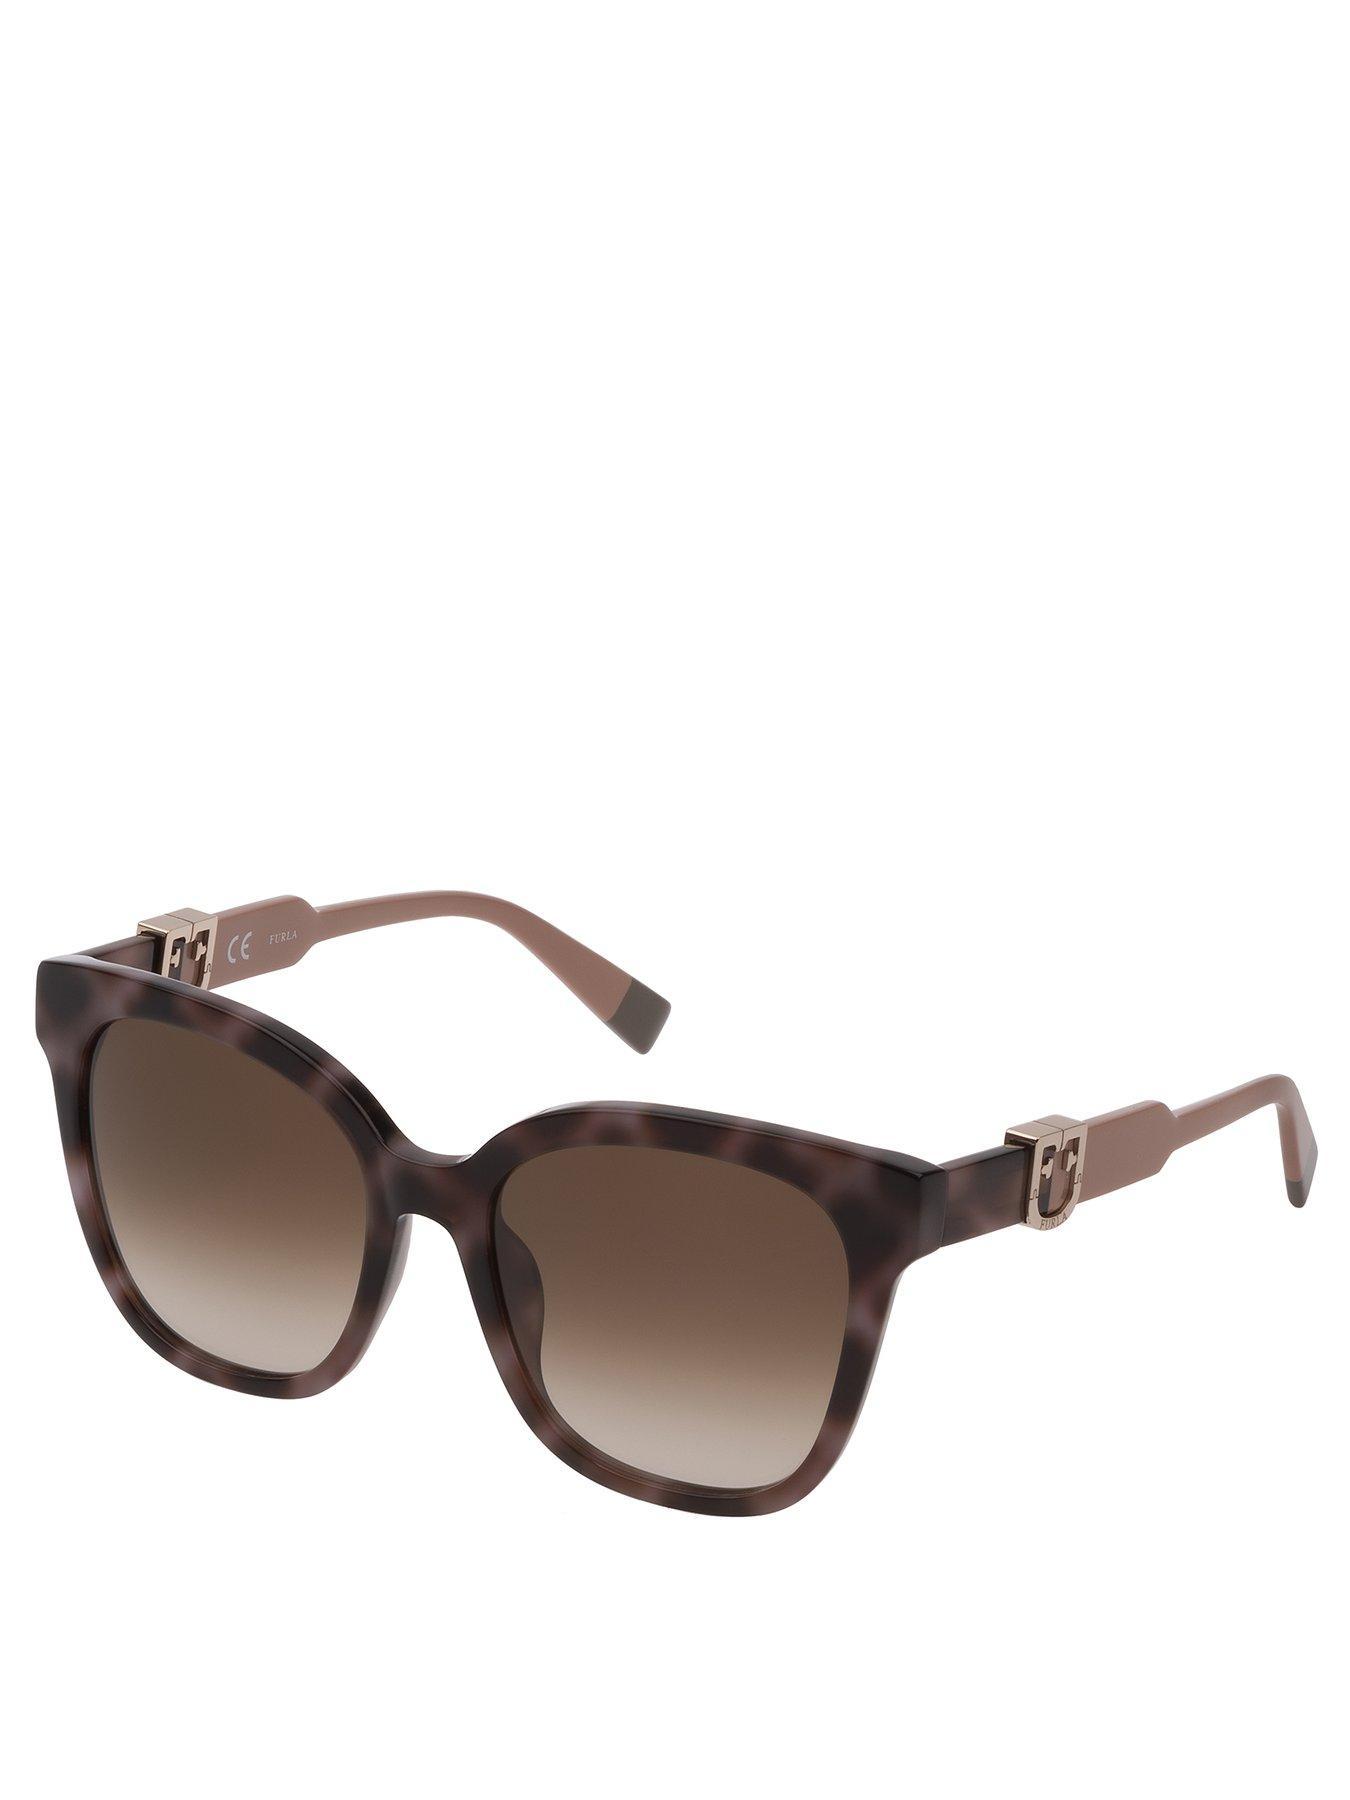 Accessories Square Sunglasses - Brown